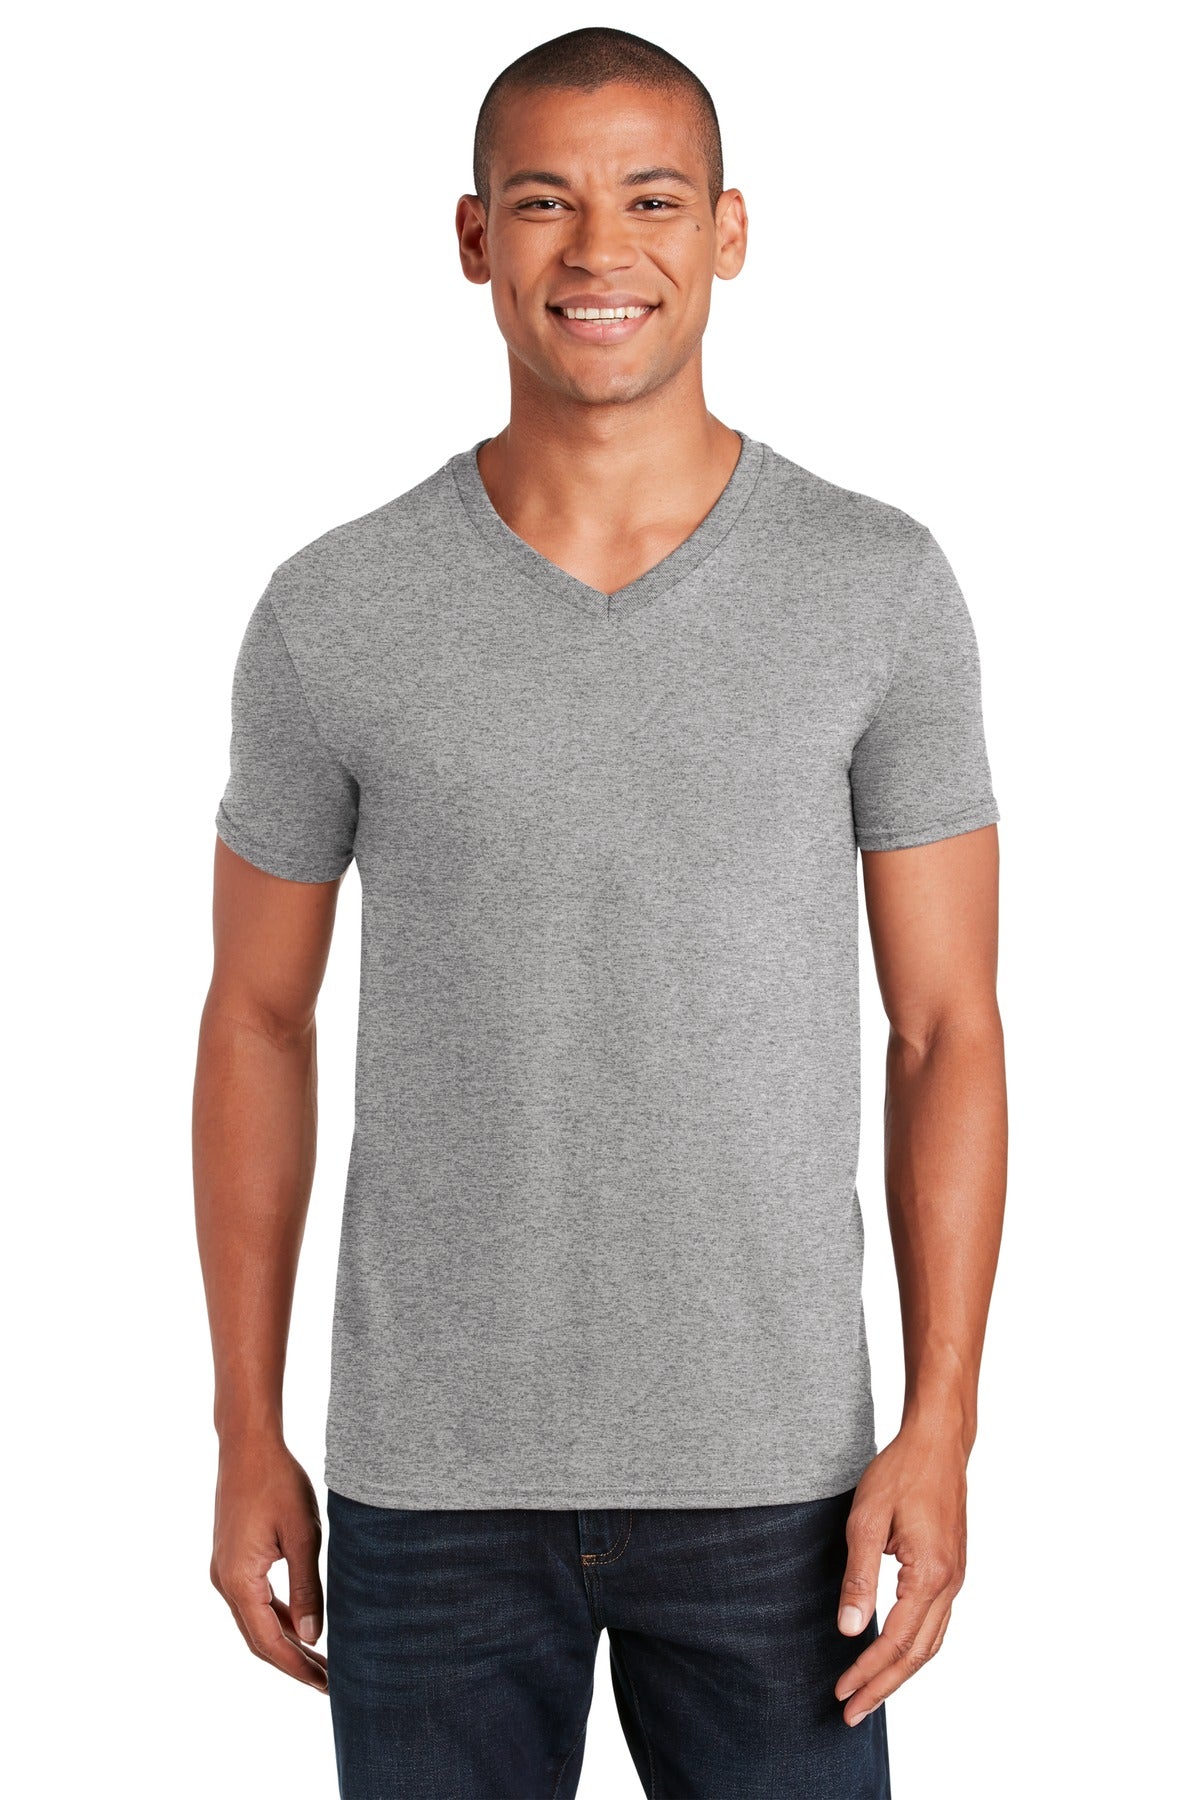 Gildan Softstyle® V-Neck T-Shirt. 64V00 - DFW Impression